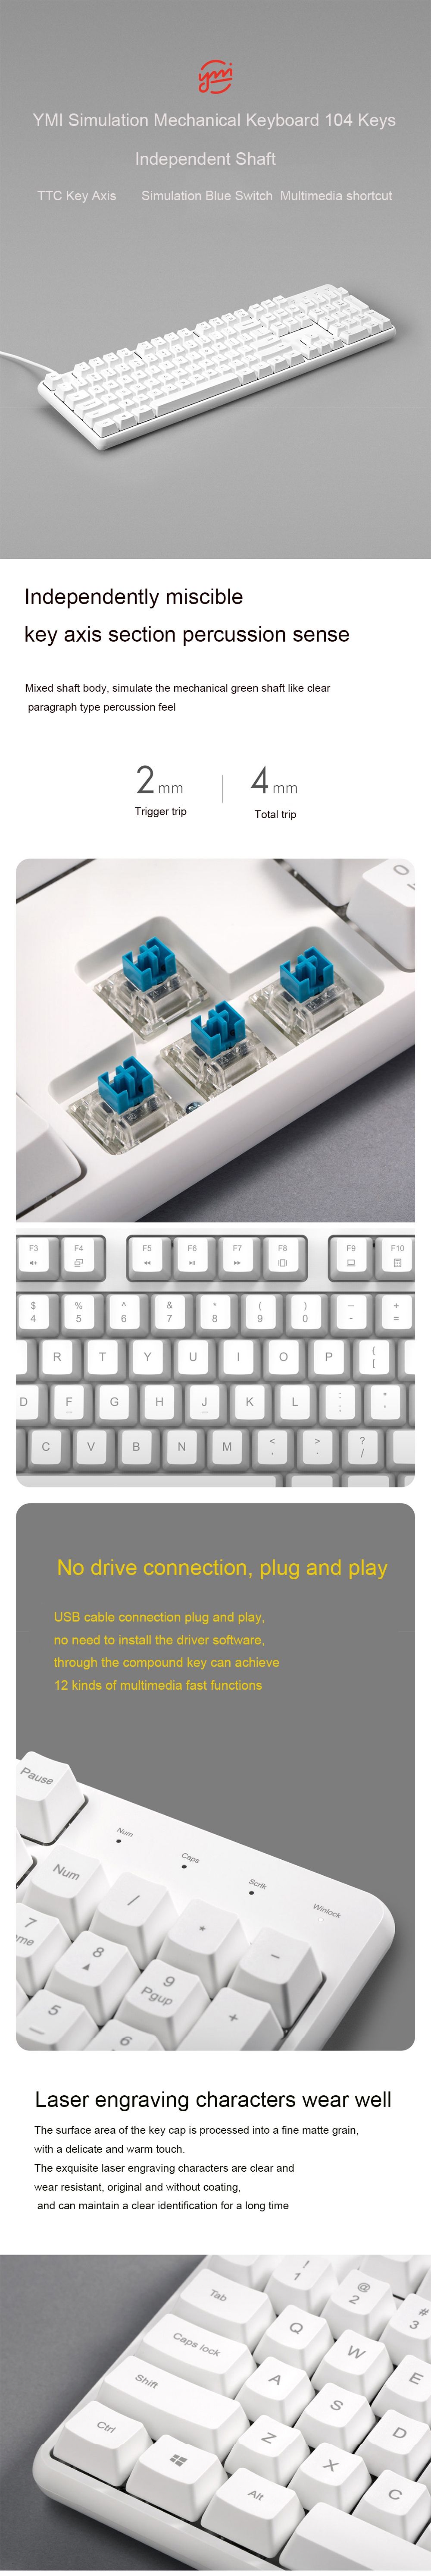 YMI-MK03C-104-Keys-USB-Wired-Simulation-Blue-Switch-Simulation-Mechanical-Keyboard-1589361